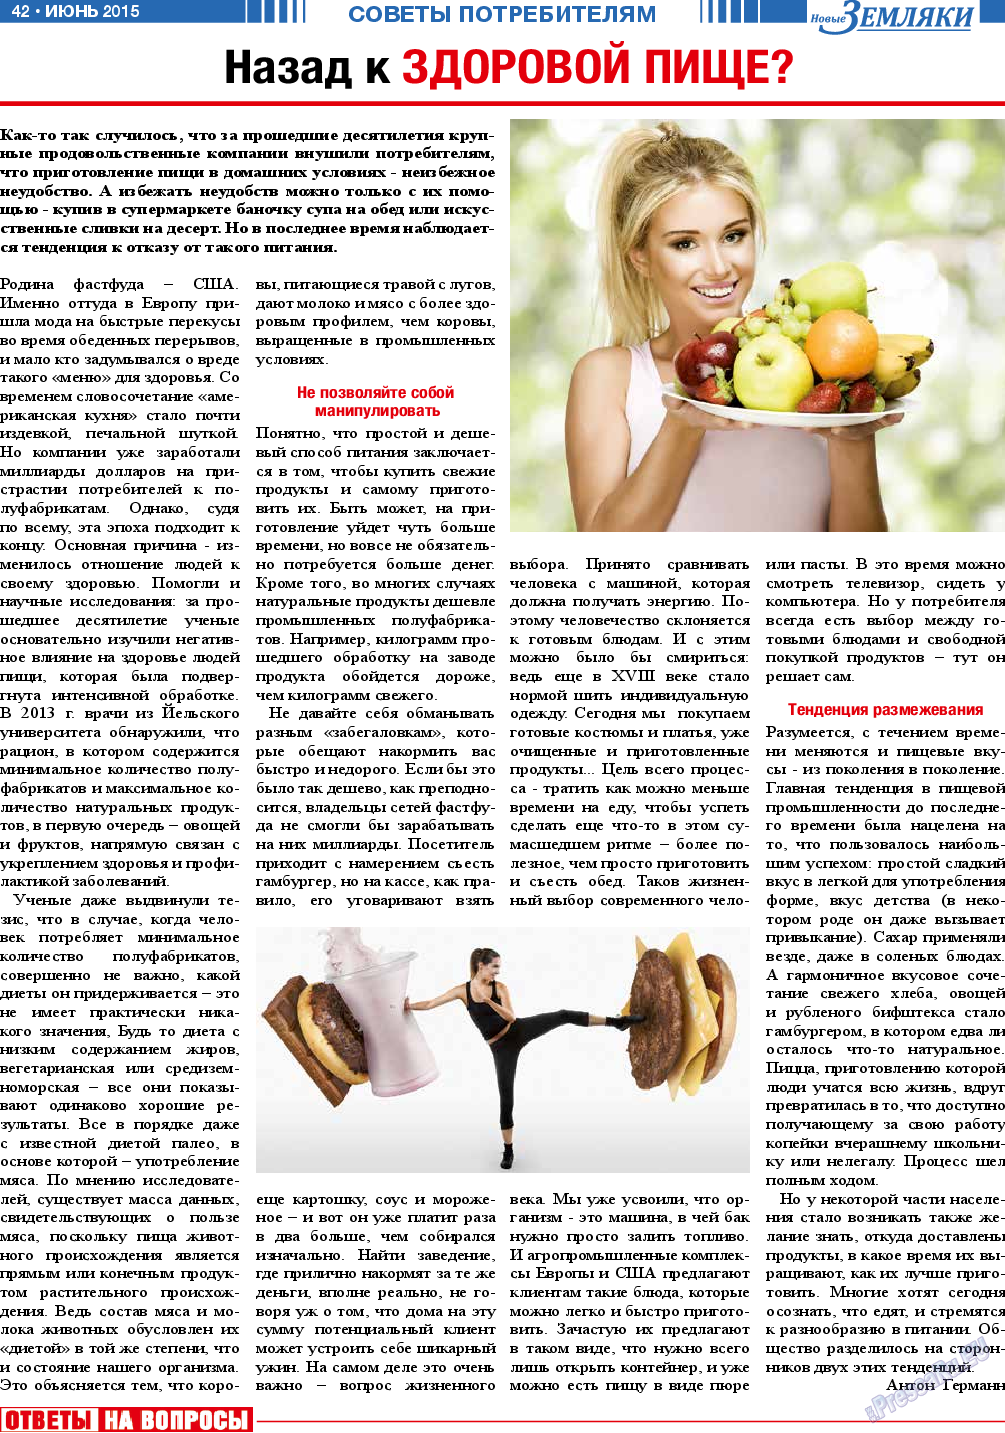 Новые Земляки, газета. 2015 №6 стр.42